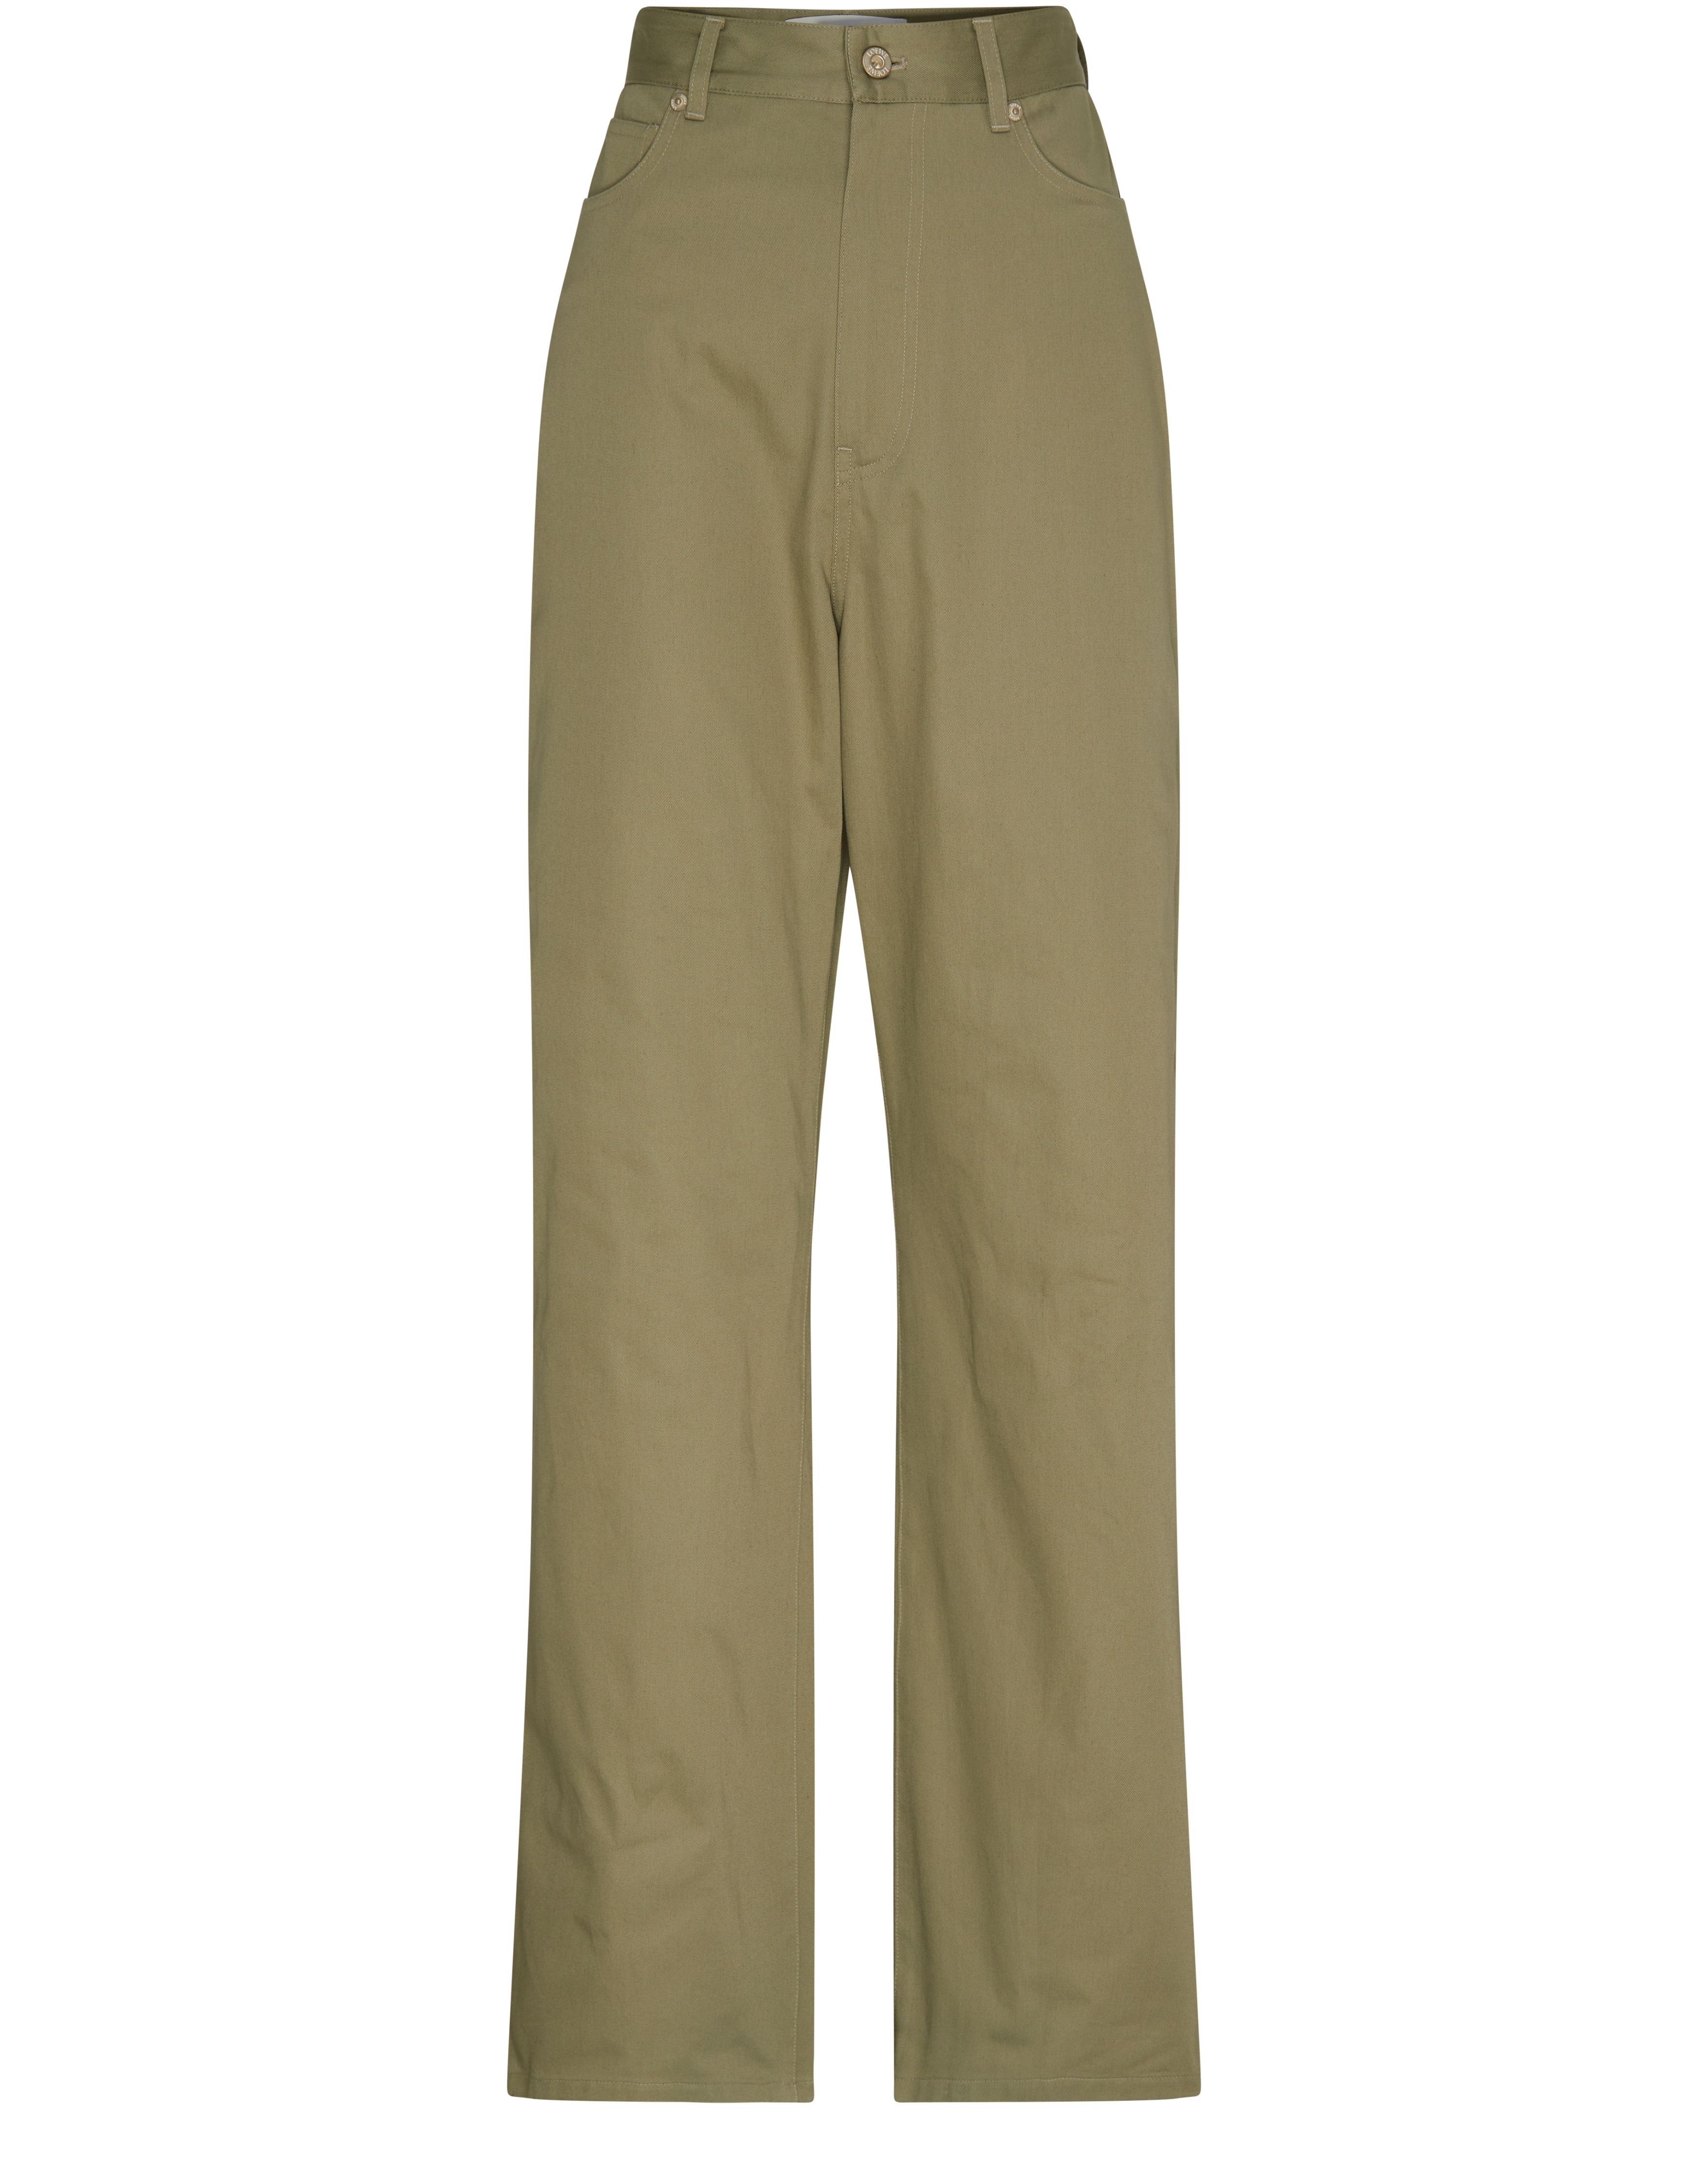 Loewe High waisted trousers